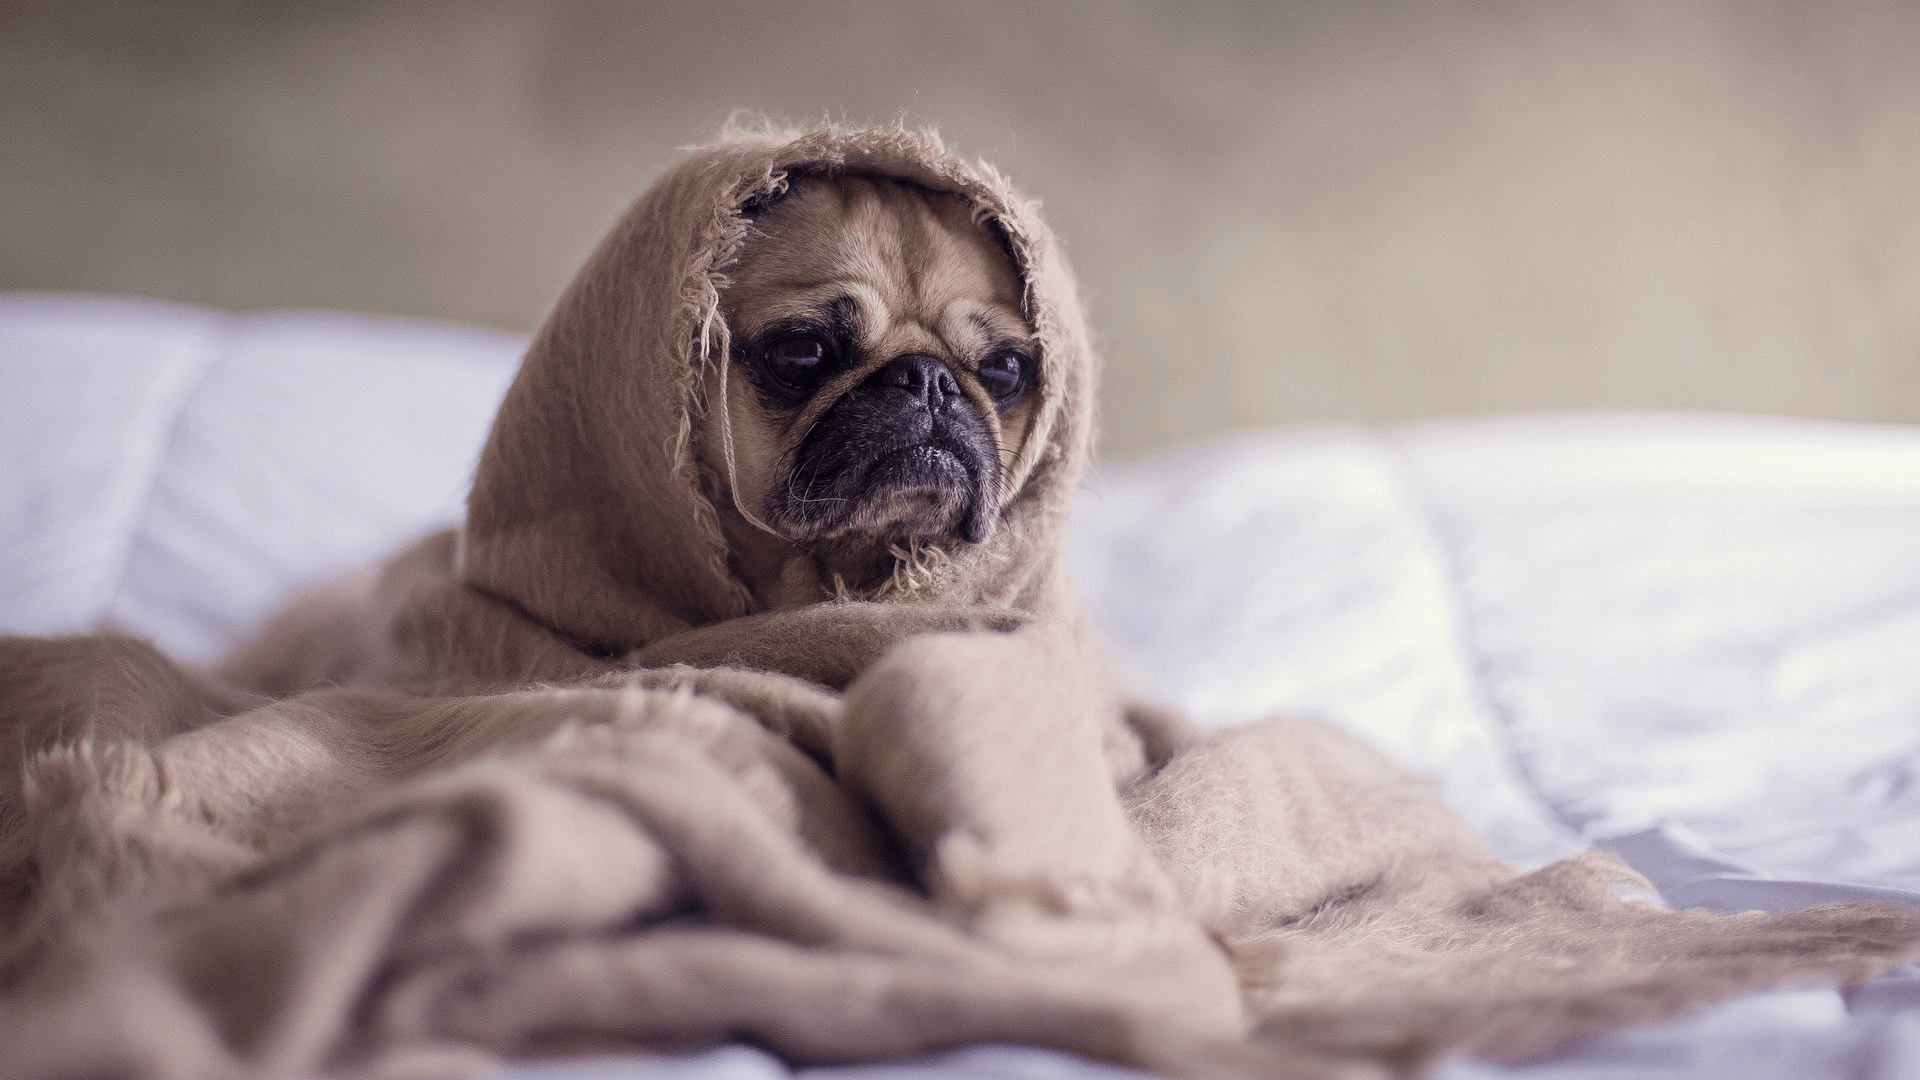 A sad puppy hides under a blanket